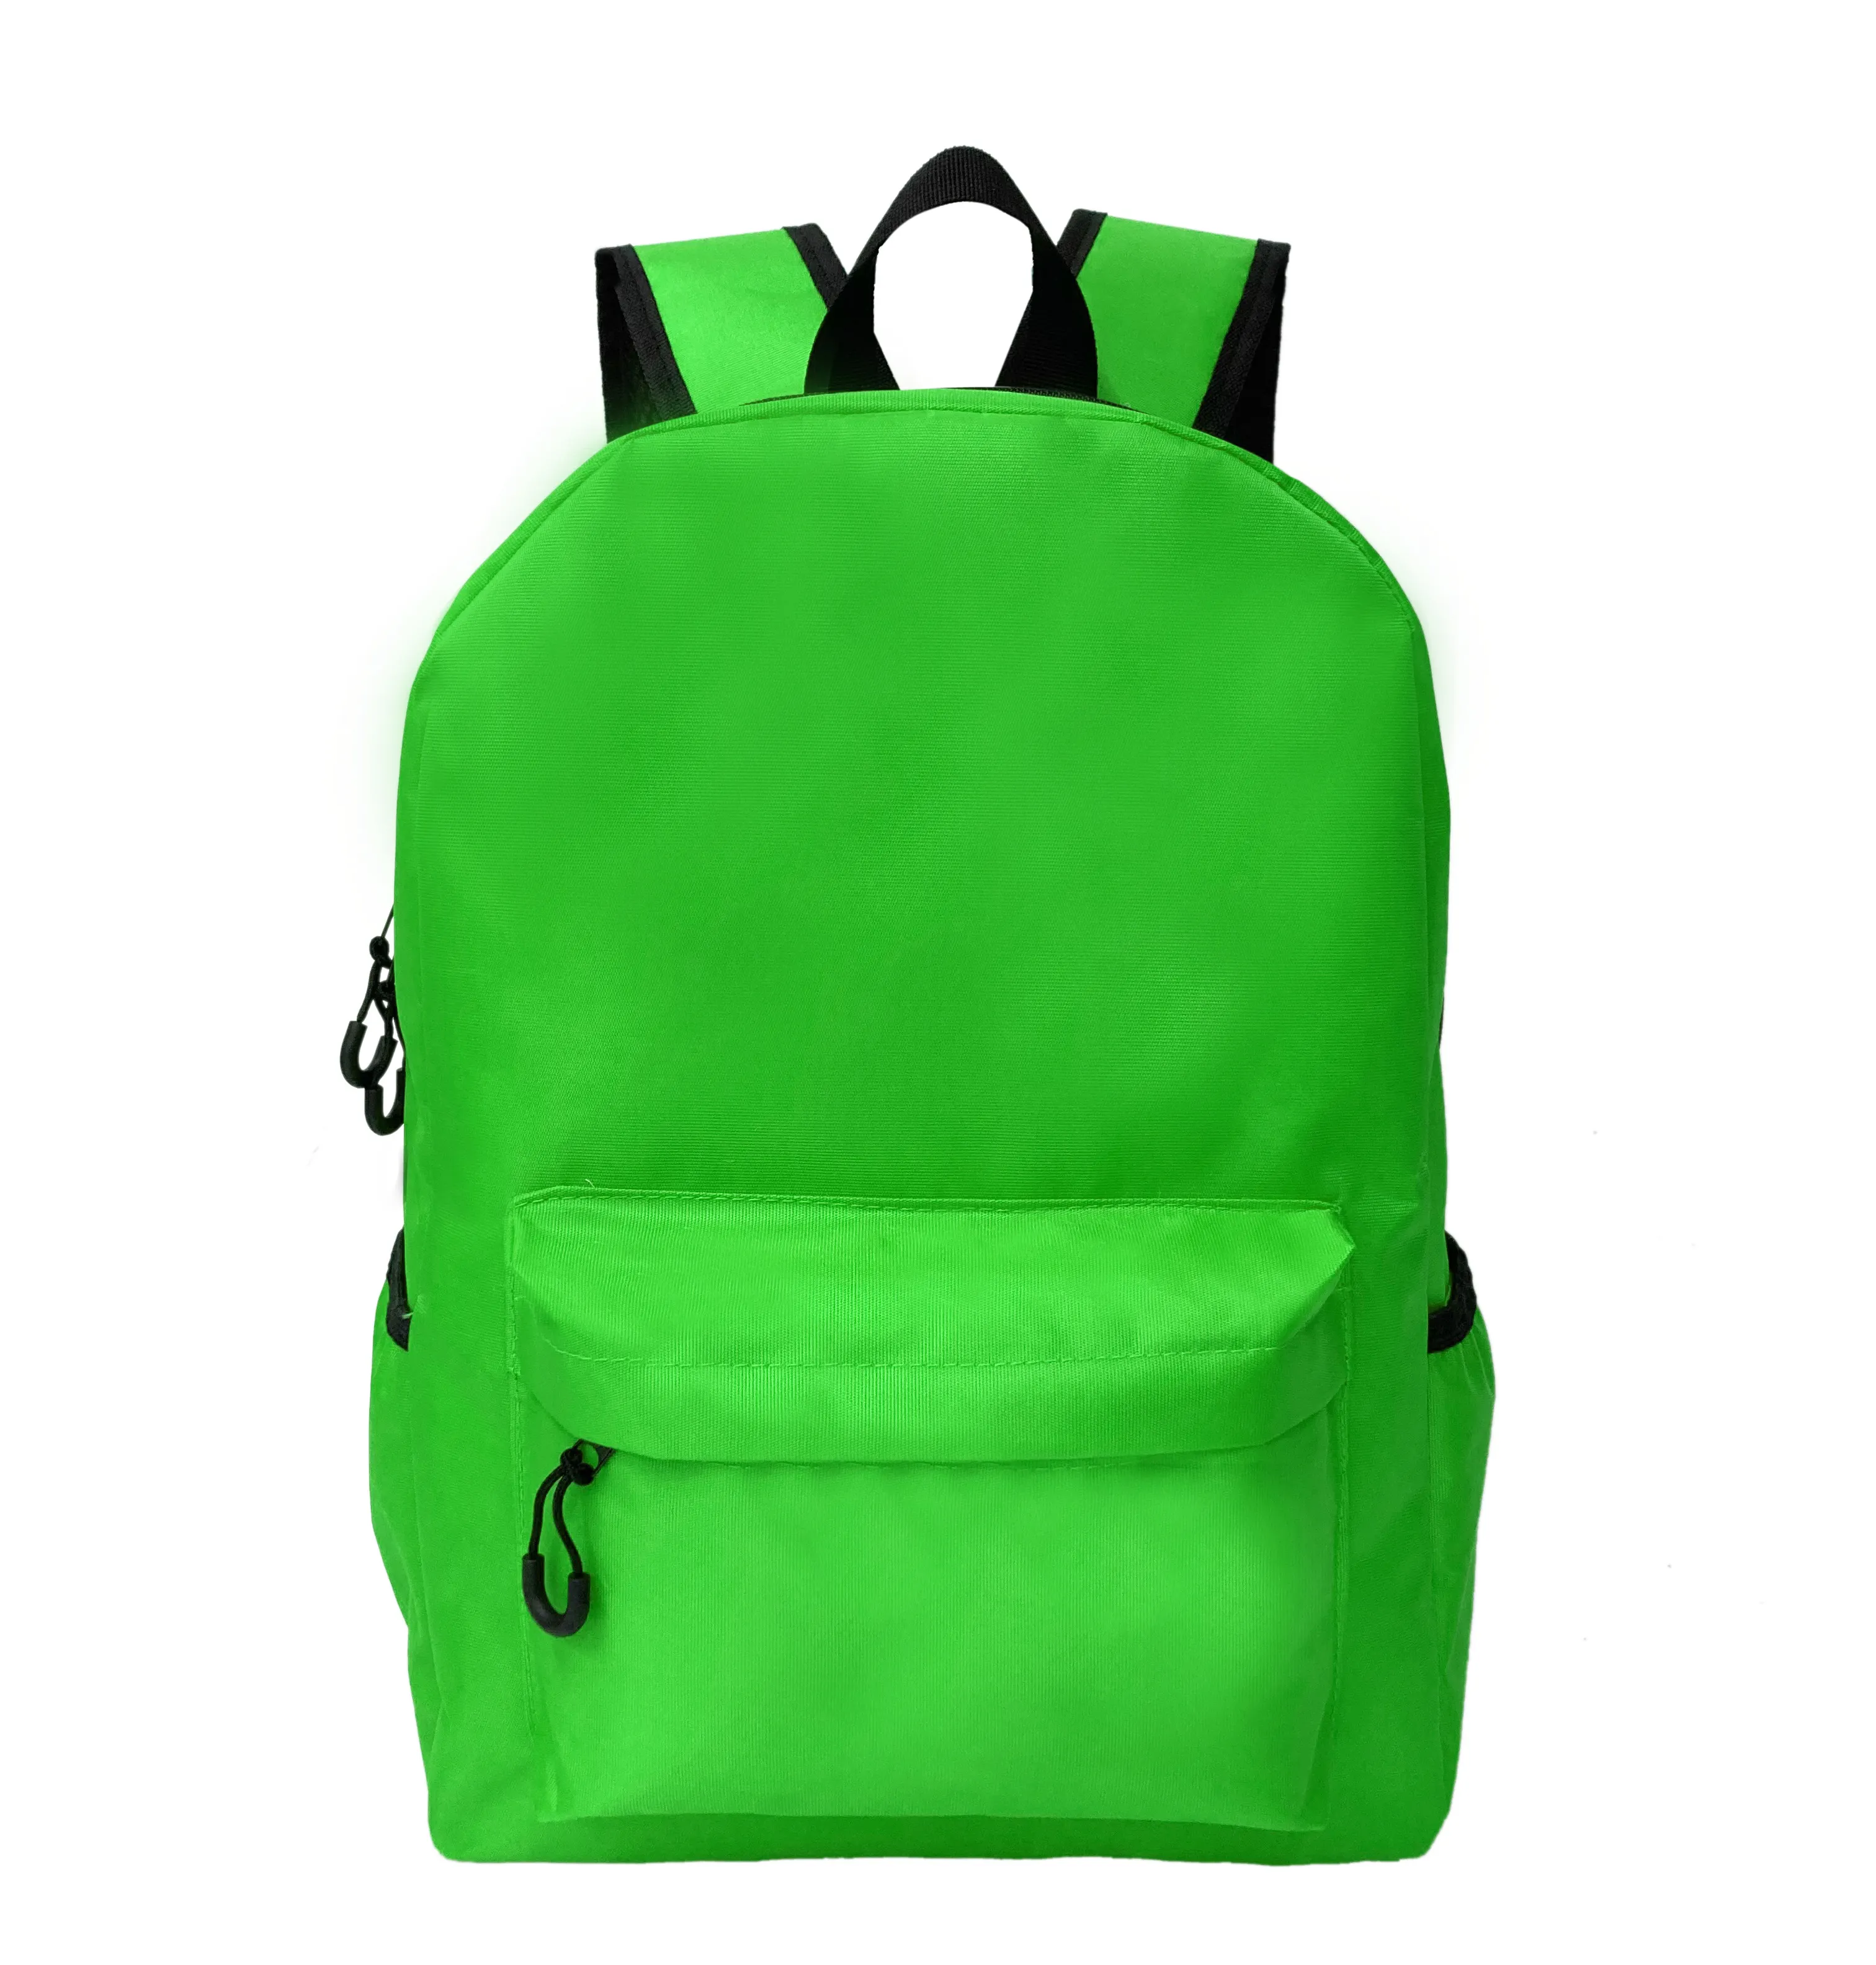 Vendita calda all'ingrosso di lusso impermeabile scuola Bookbag durevole verde semplice Design ragazze zaino scuola borse per la scuola superiore